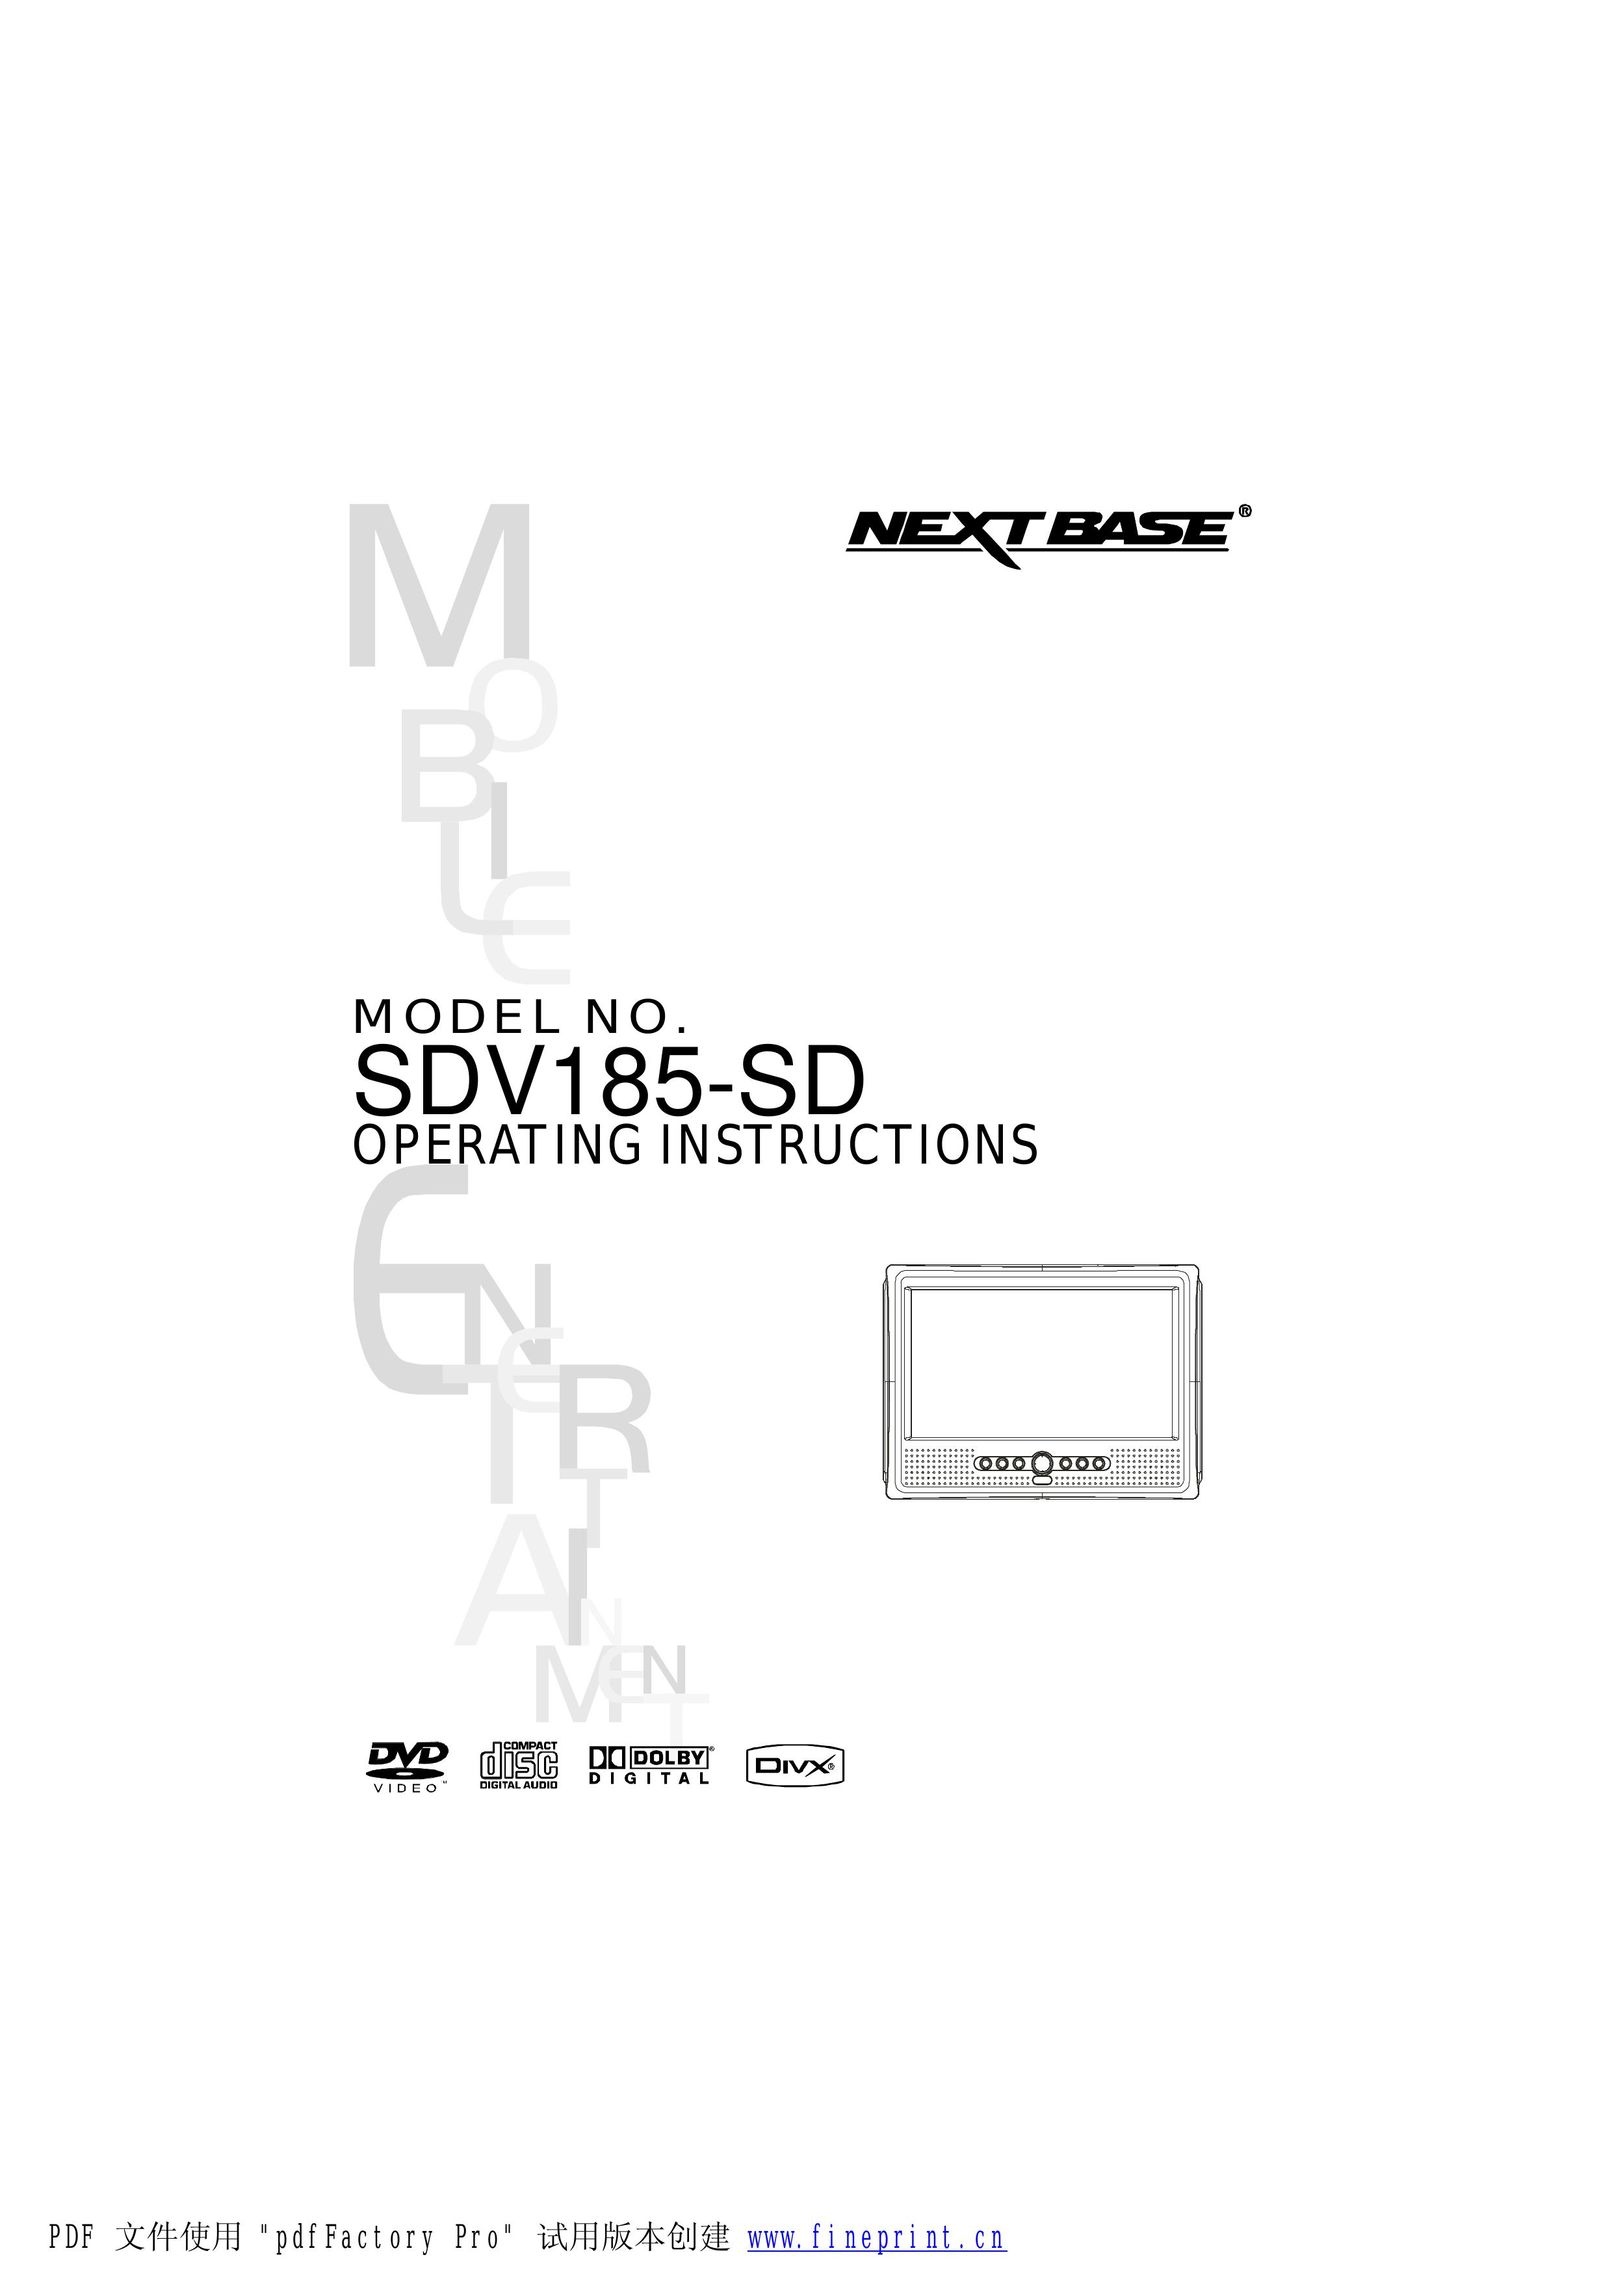 NextBase SDV185-SD Portable DVD Player User Manual